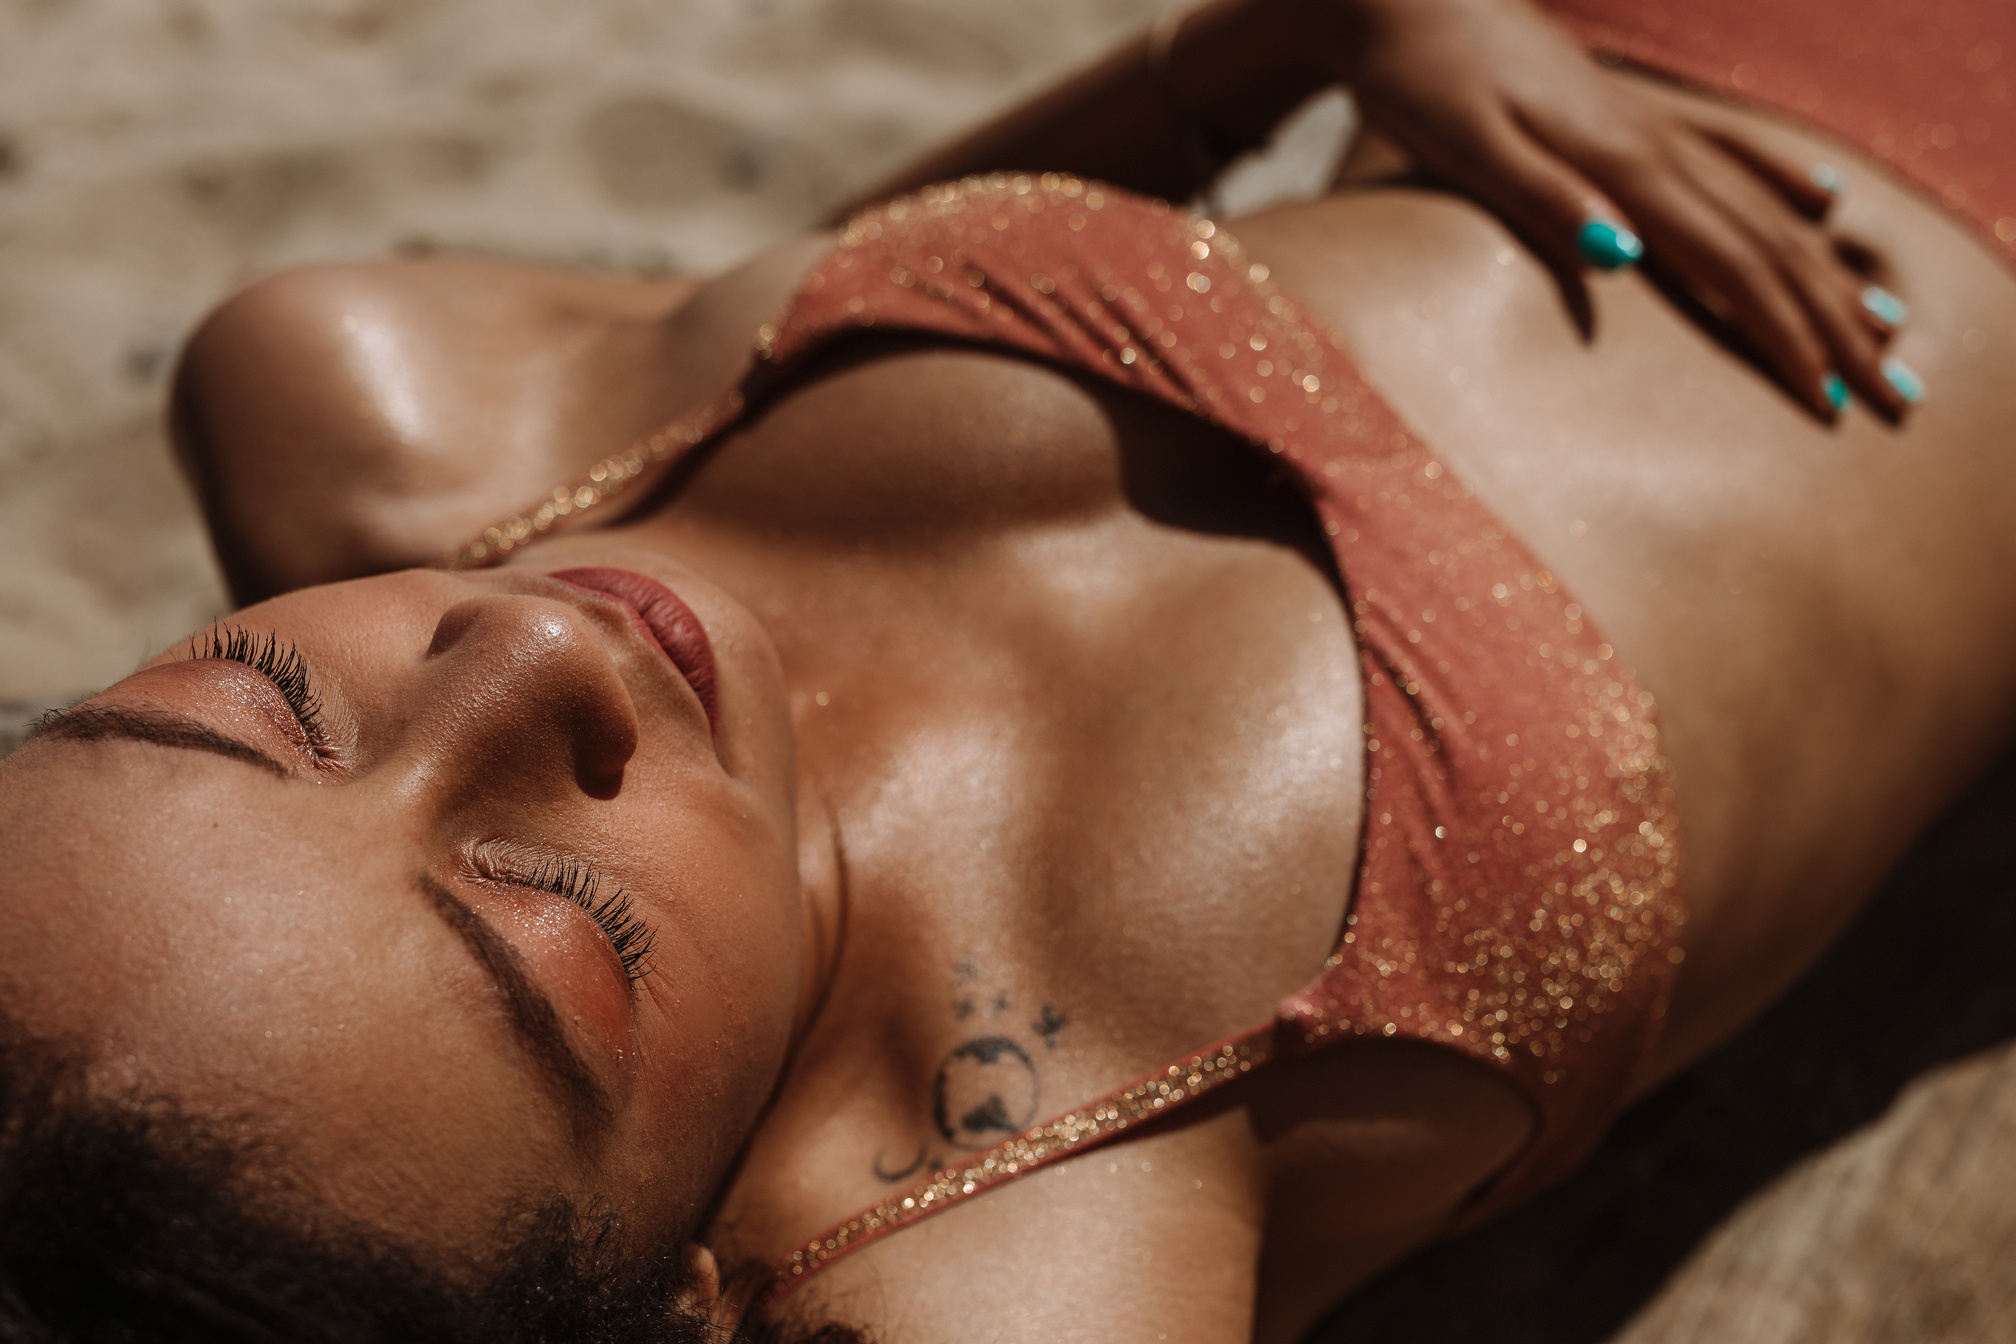 Woman in Bikini Lying on Beach